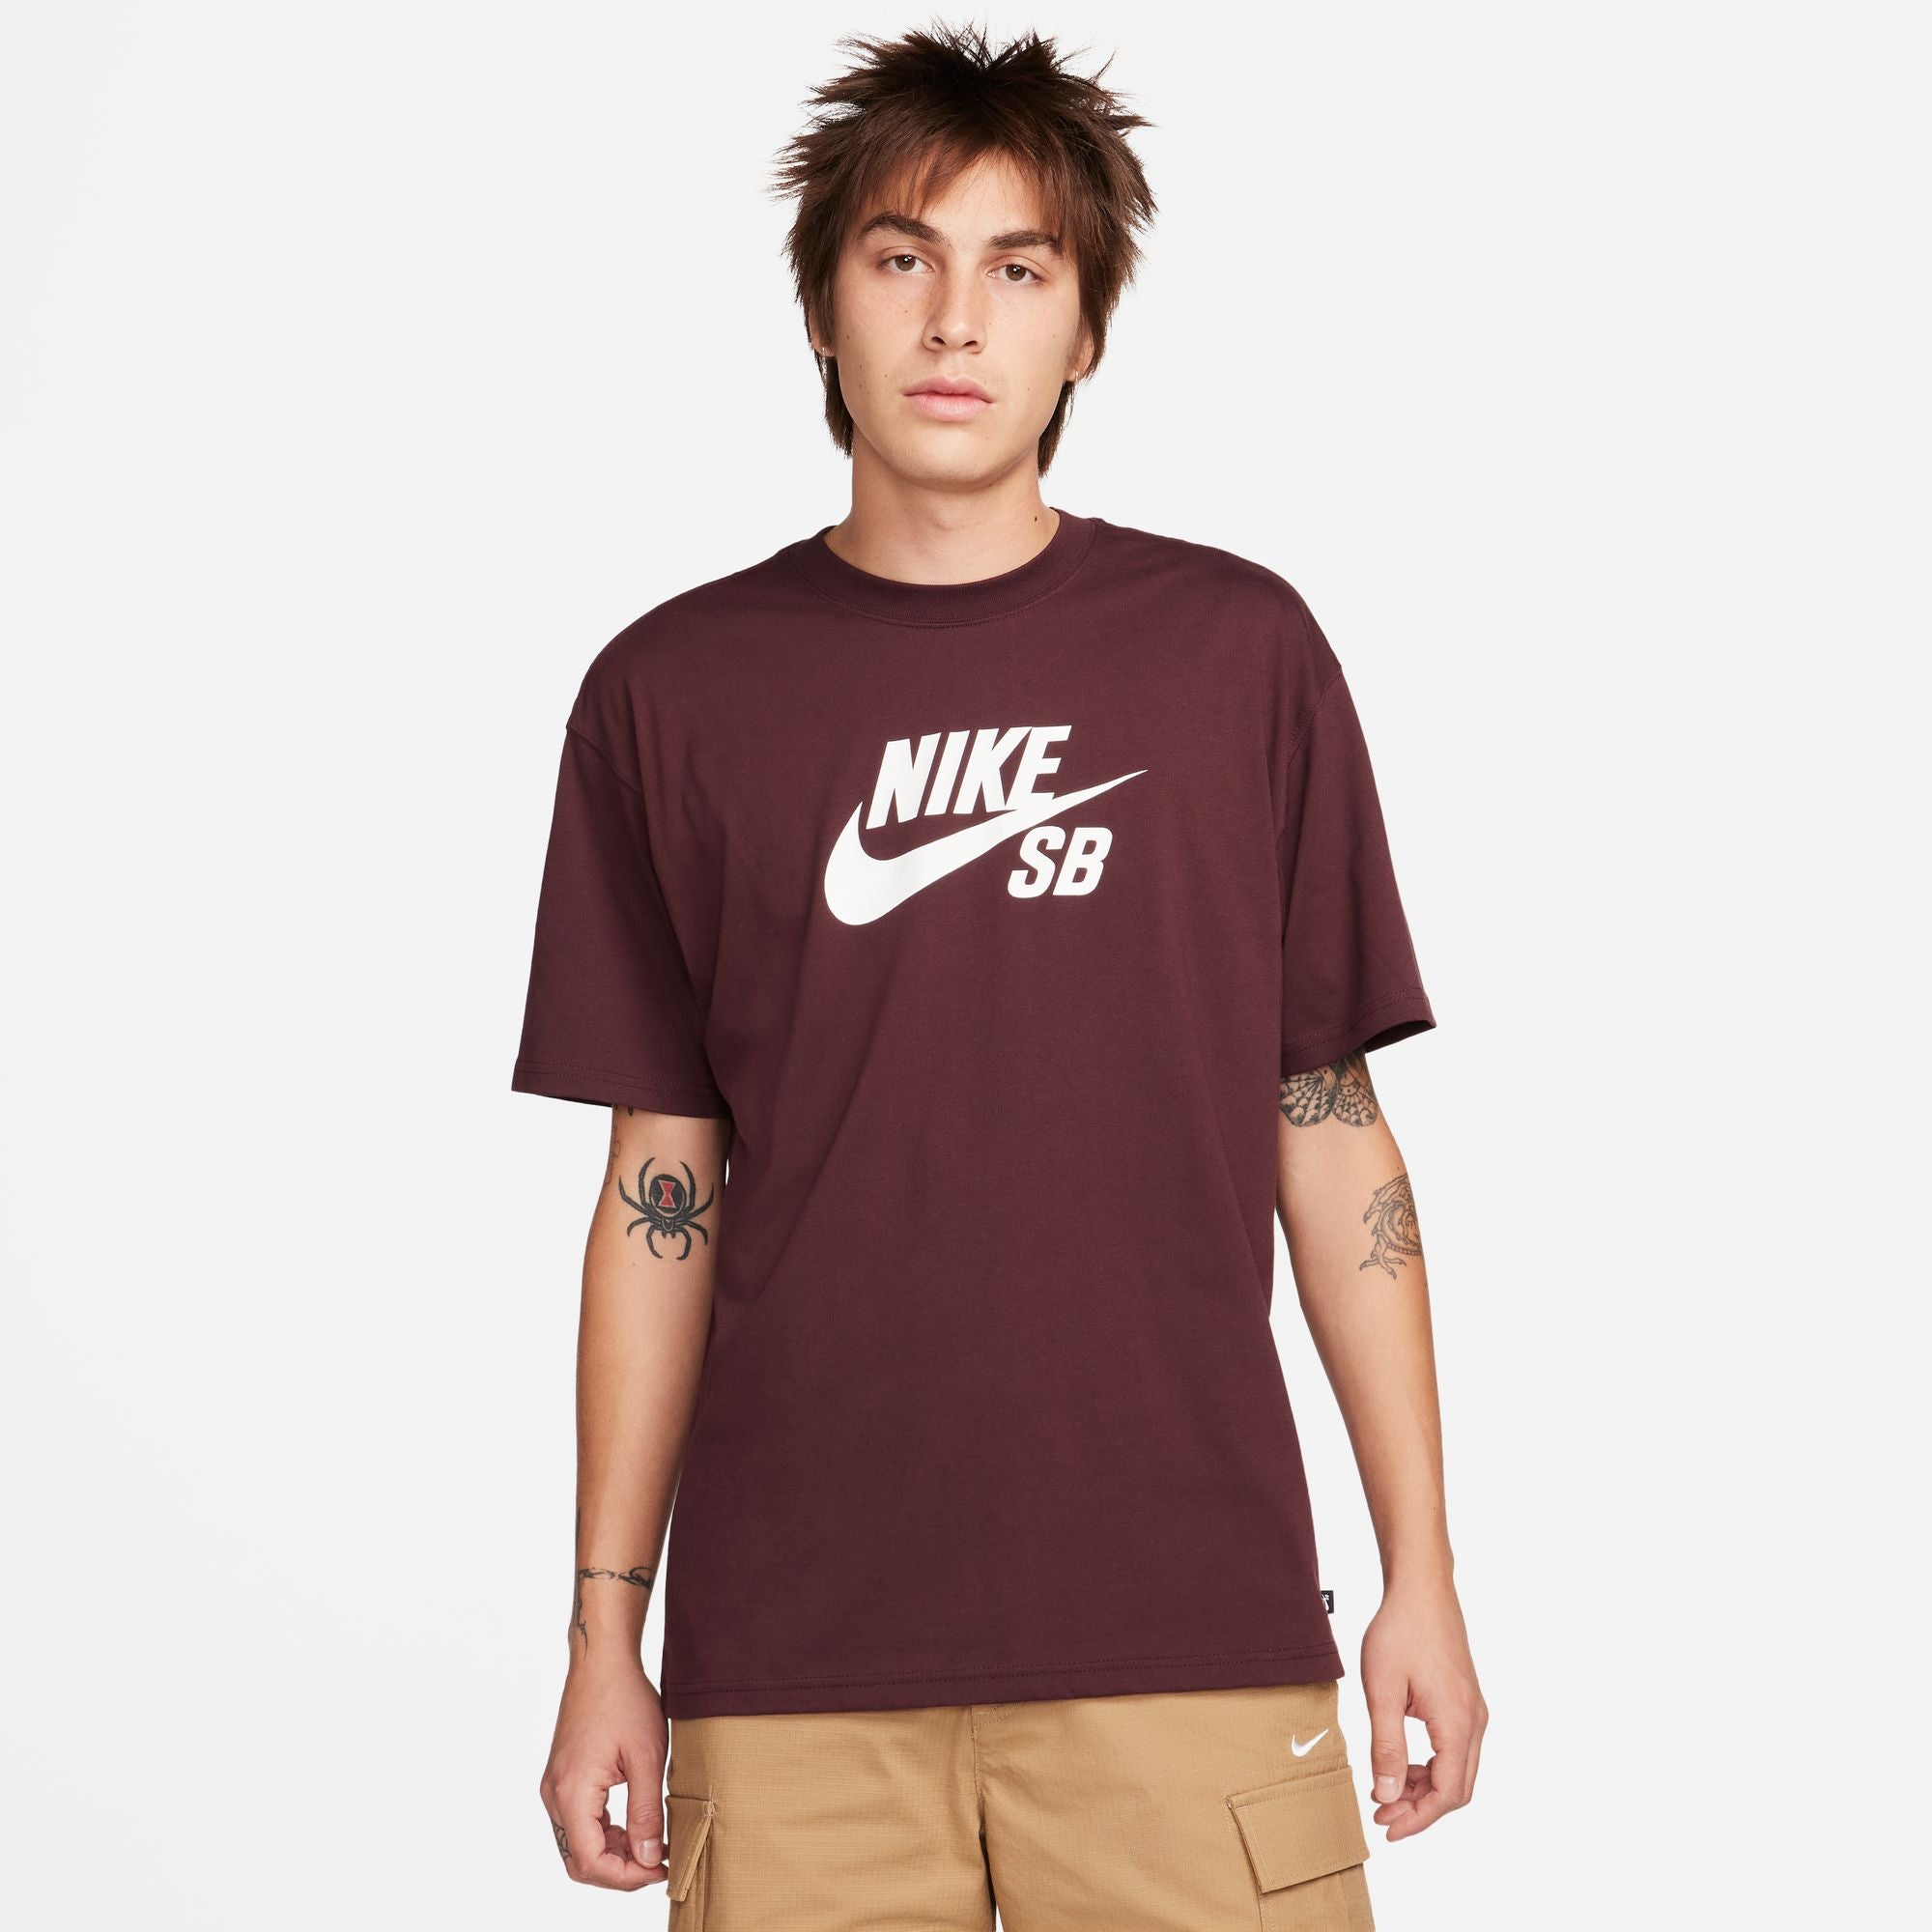 Burgundy Crush Nike SB Logo T-Shirt